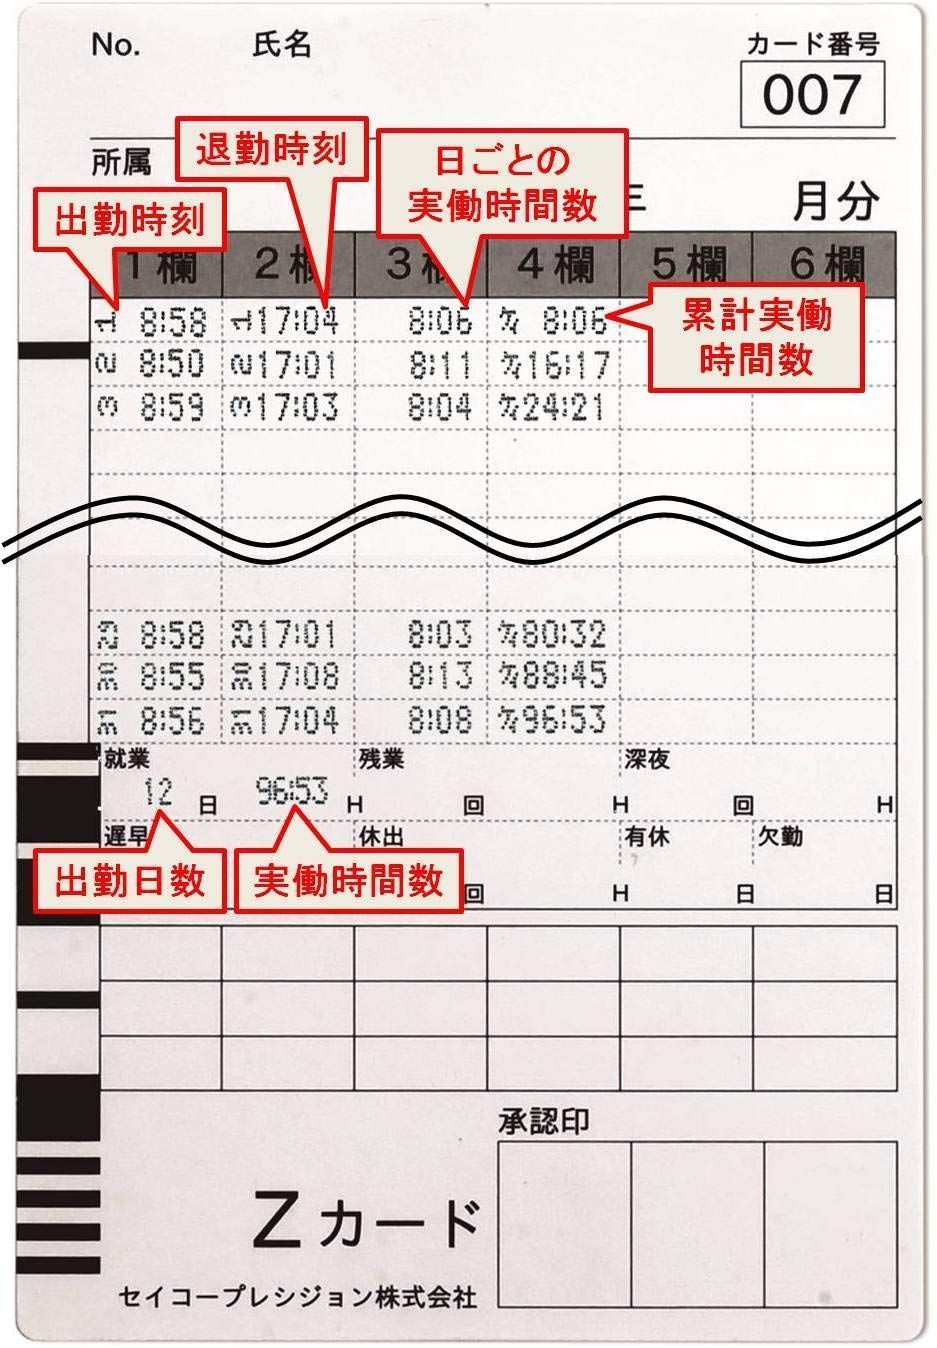 セイコープレシジョン タイムレコーダー QR-4550ホワイト - 2